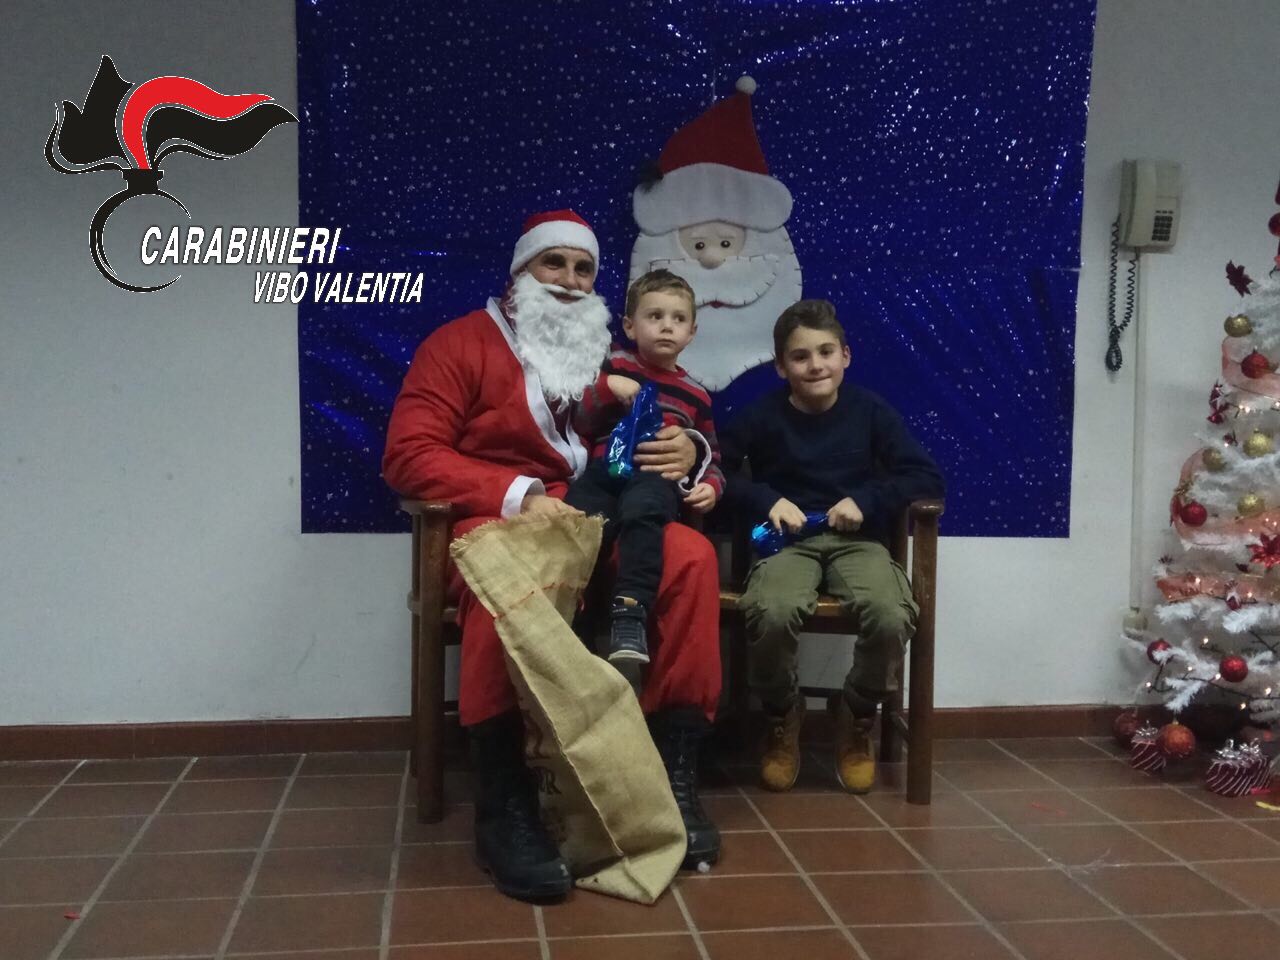 Babbo Natale Video Per Bambini.Si Cala Dal Tetto Portando Doni Ai Bambini Carabiniere Babbo Natale In Calabria Foto E Video Stretto Web